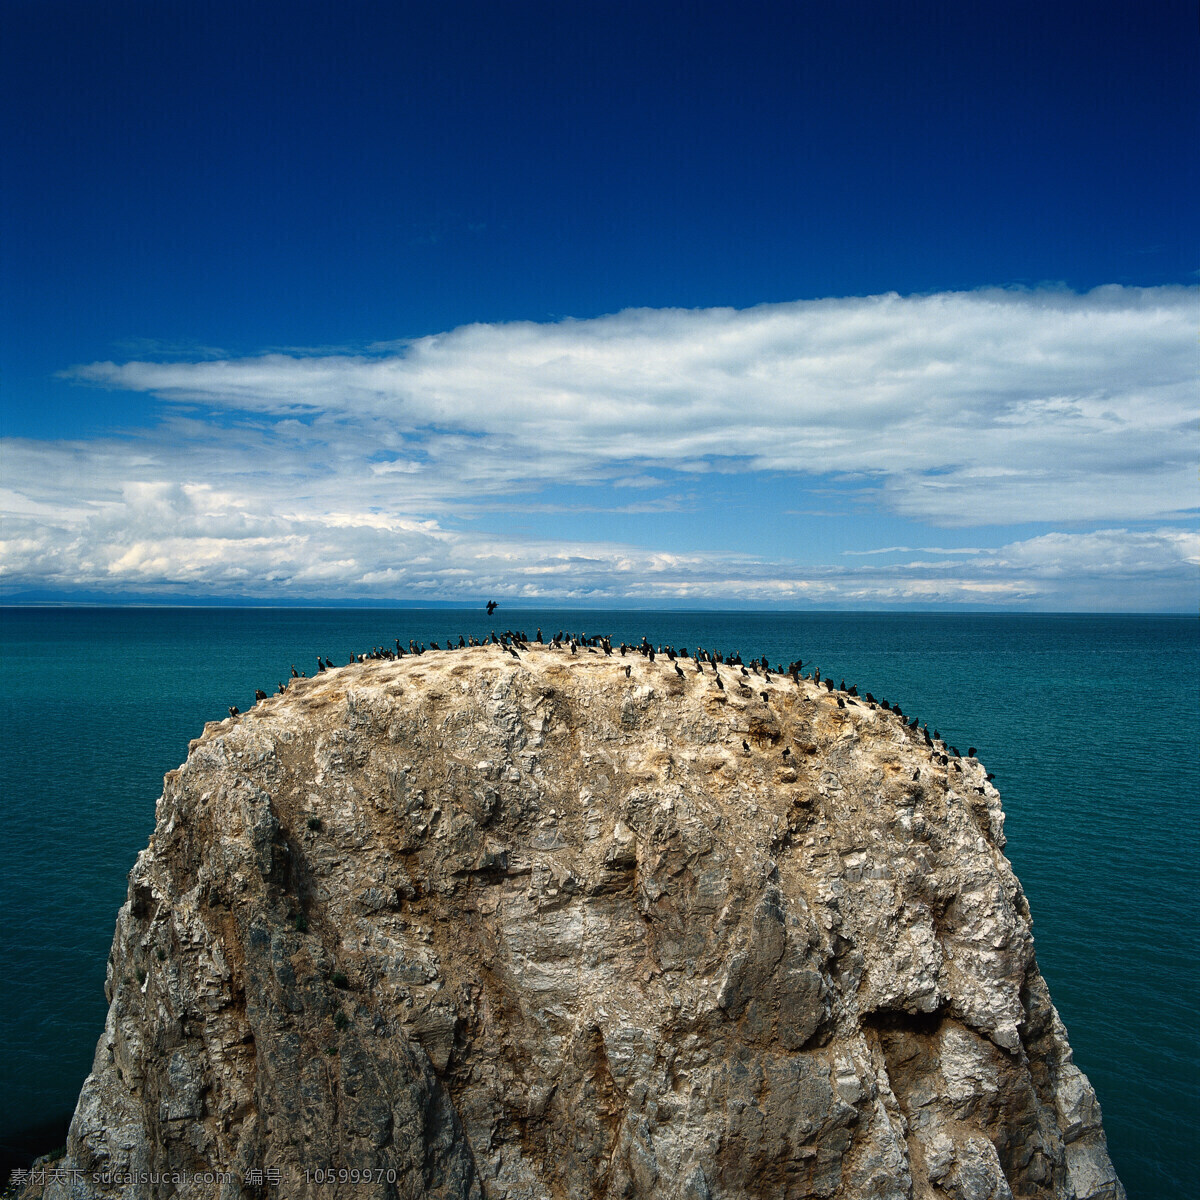 大海 中 小岛 大自然 自然风景 美丽风景 美景 景色 风景摄影 旅游景区 旅游风景 石头 海洋 蓝天白云 山水风景 风景图片